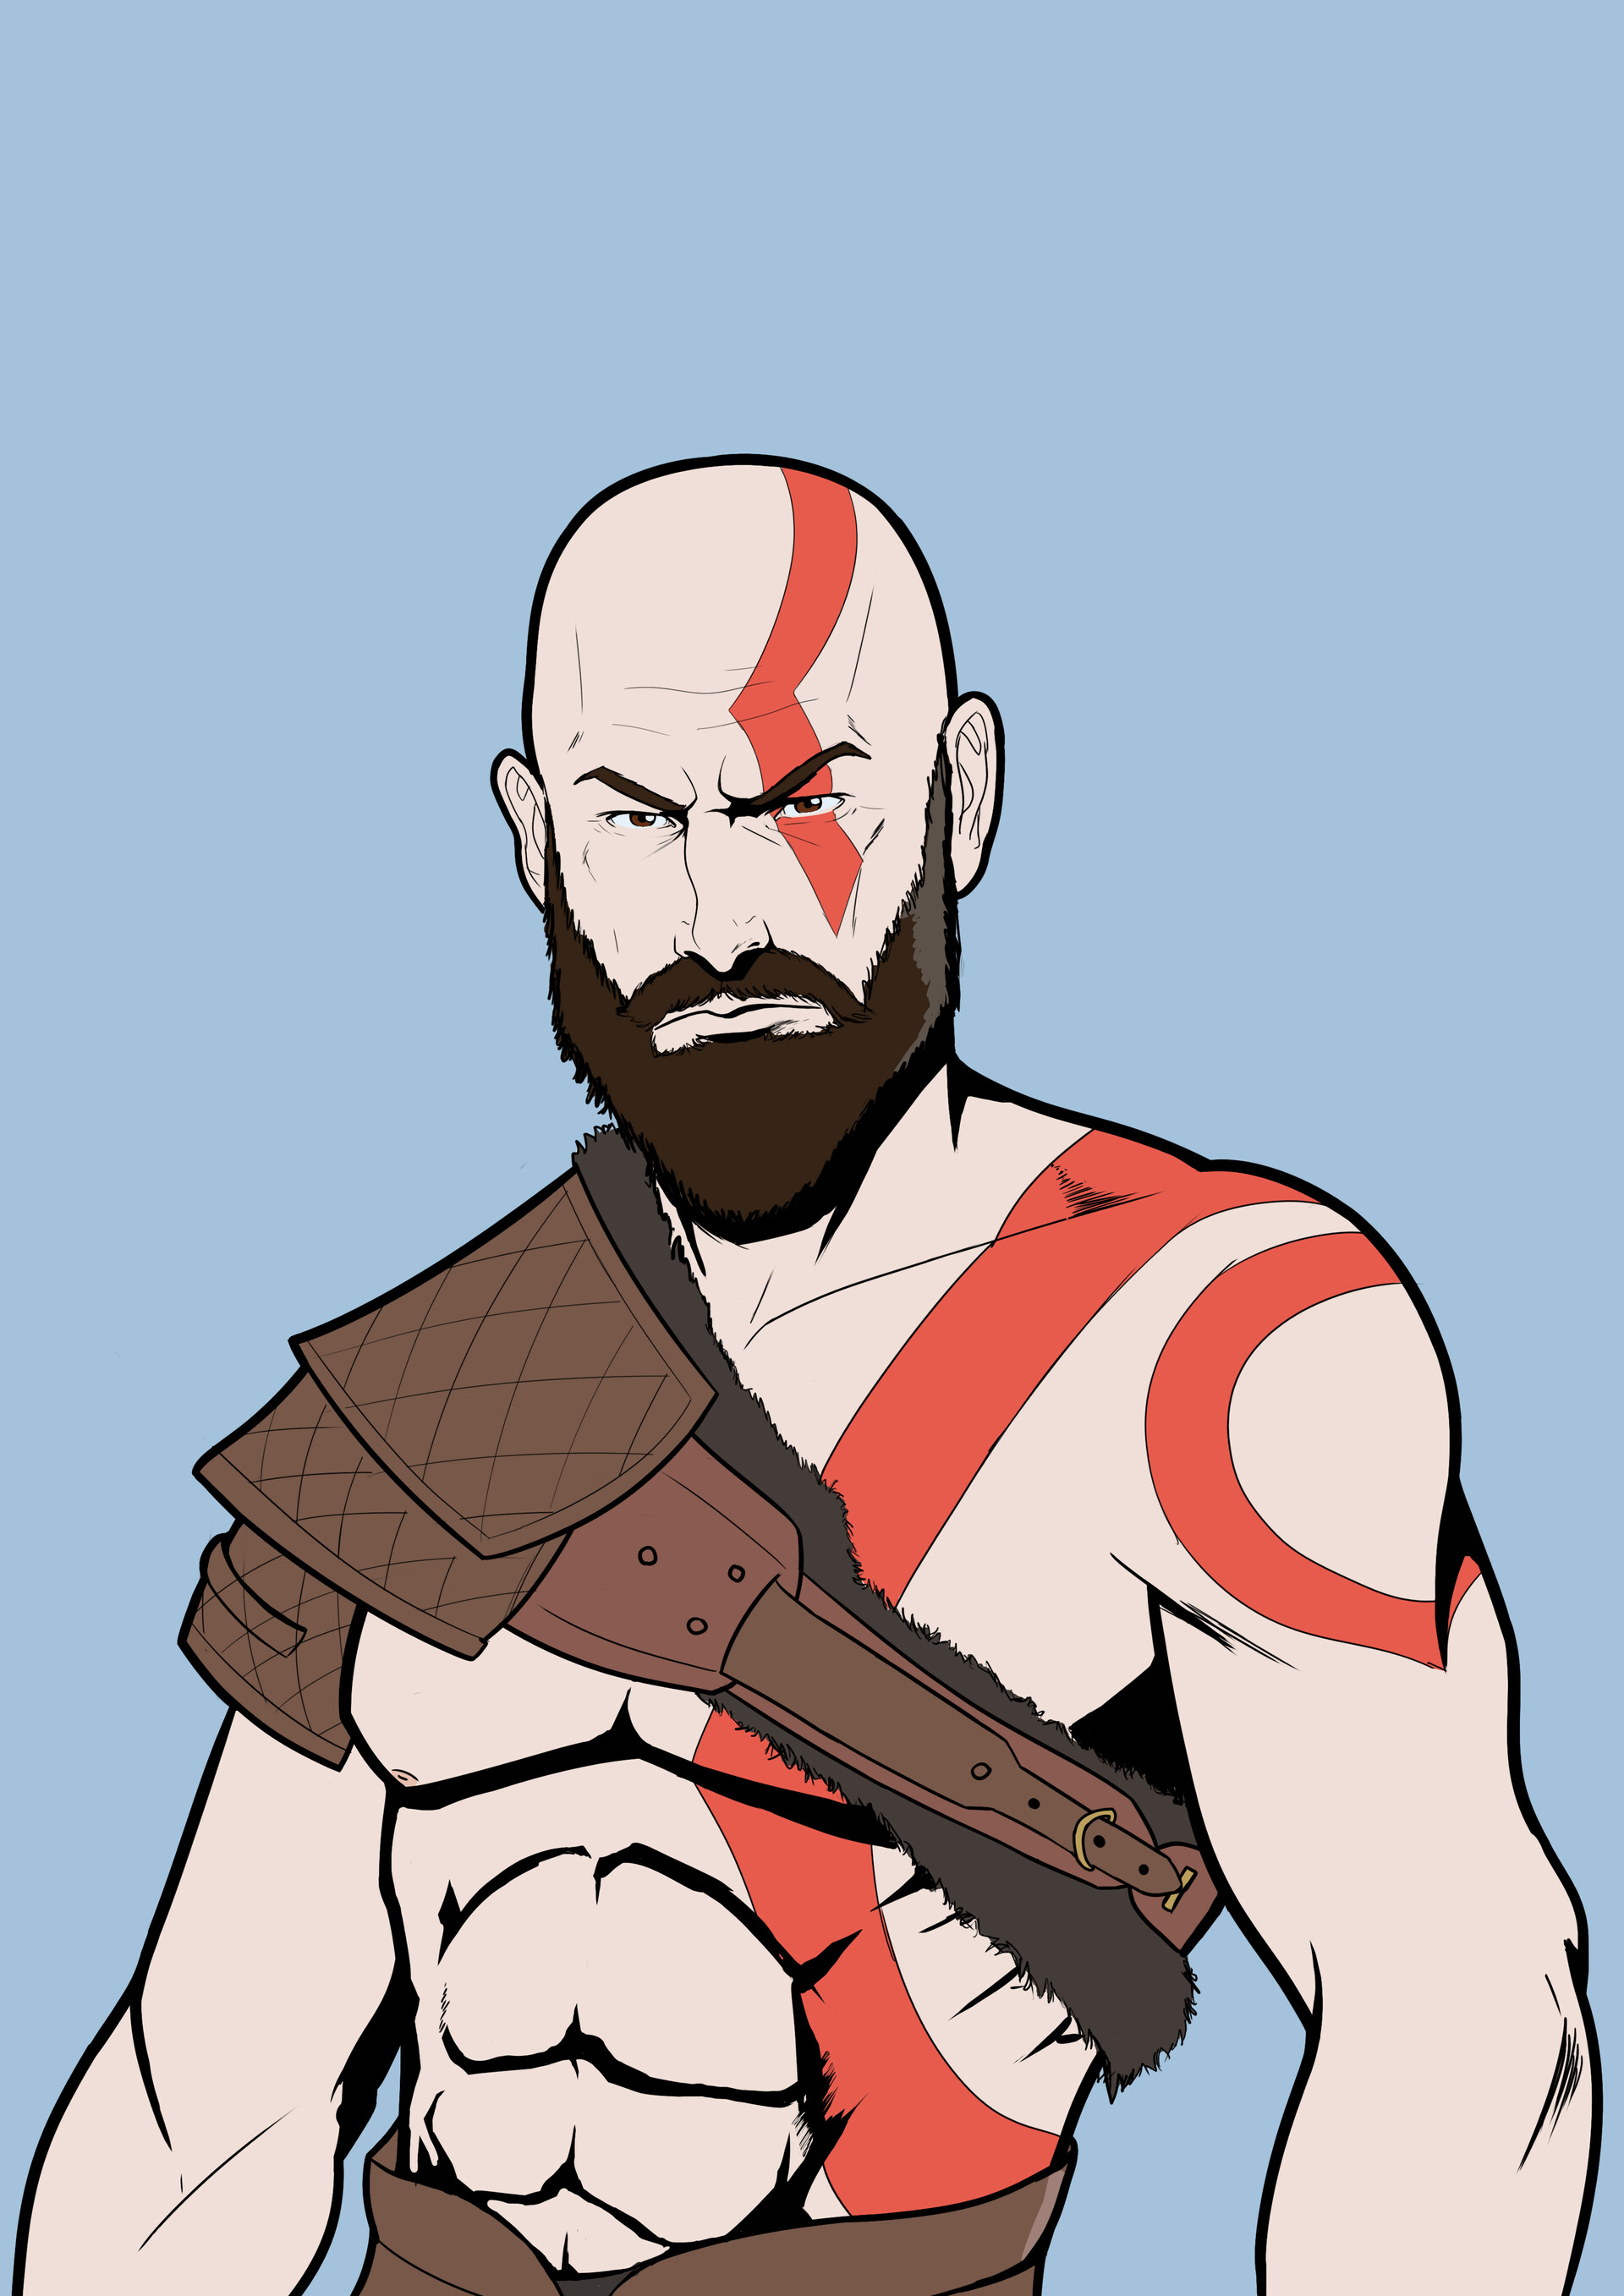 ArtStation - God Of War - Kratos